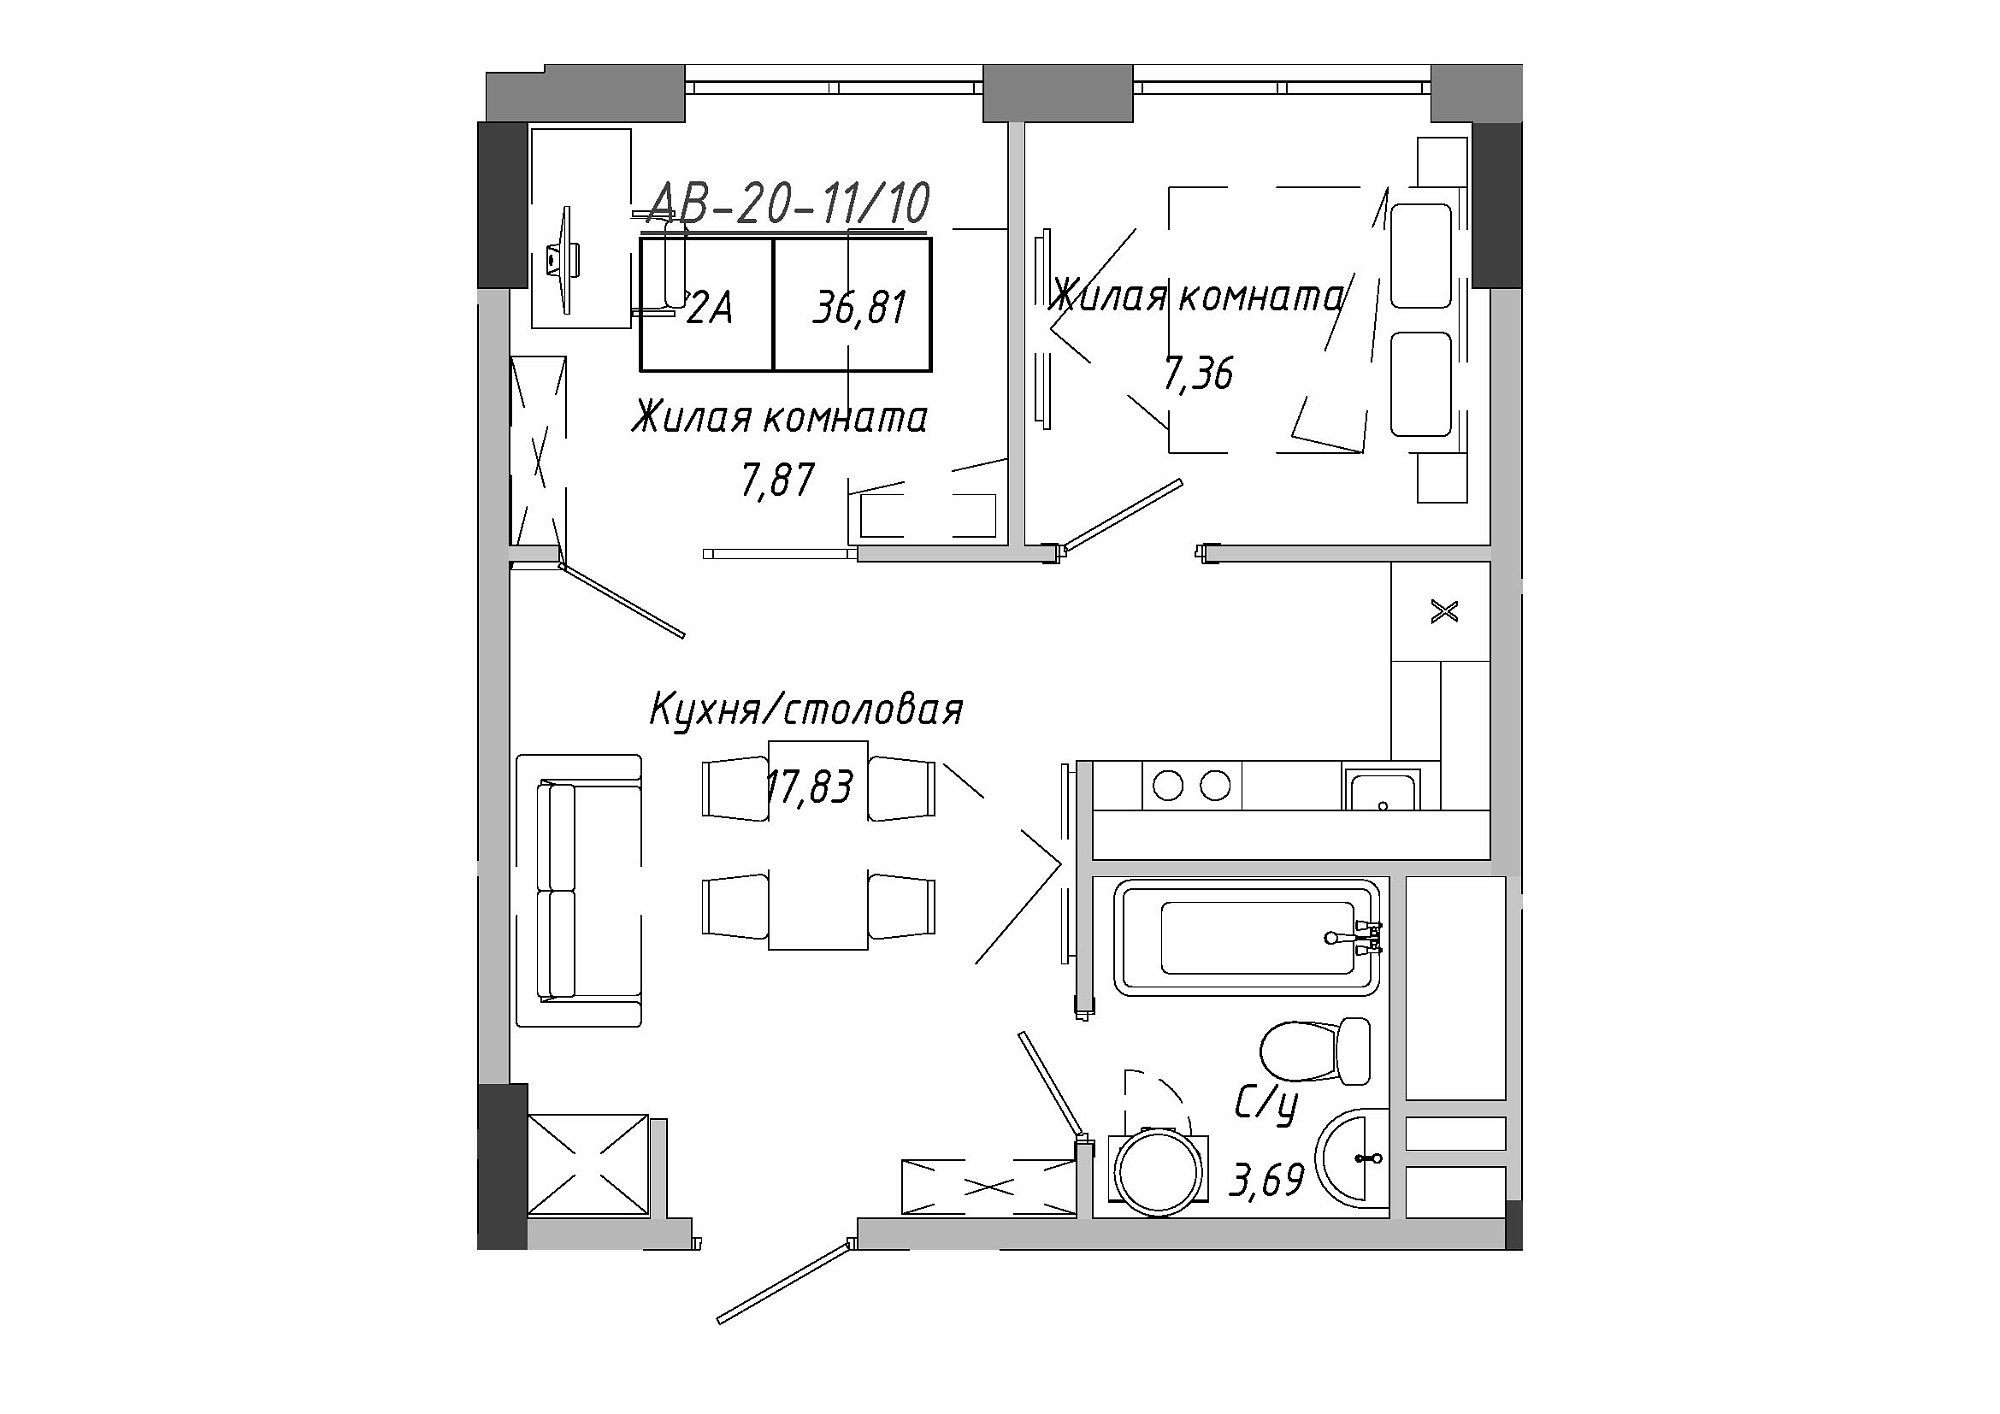 Планировка 2-к квартира площей 37.15м2, AB-20-11/00010.